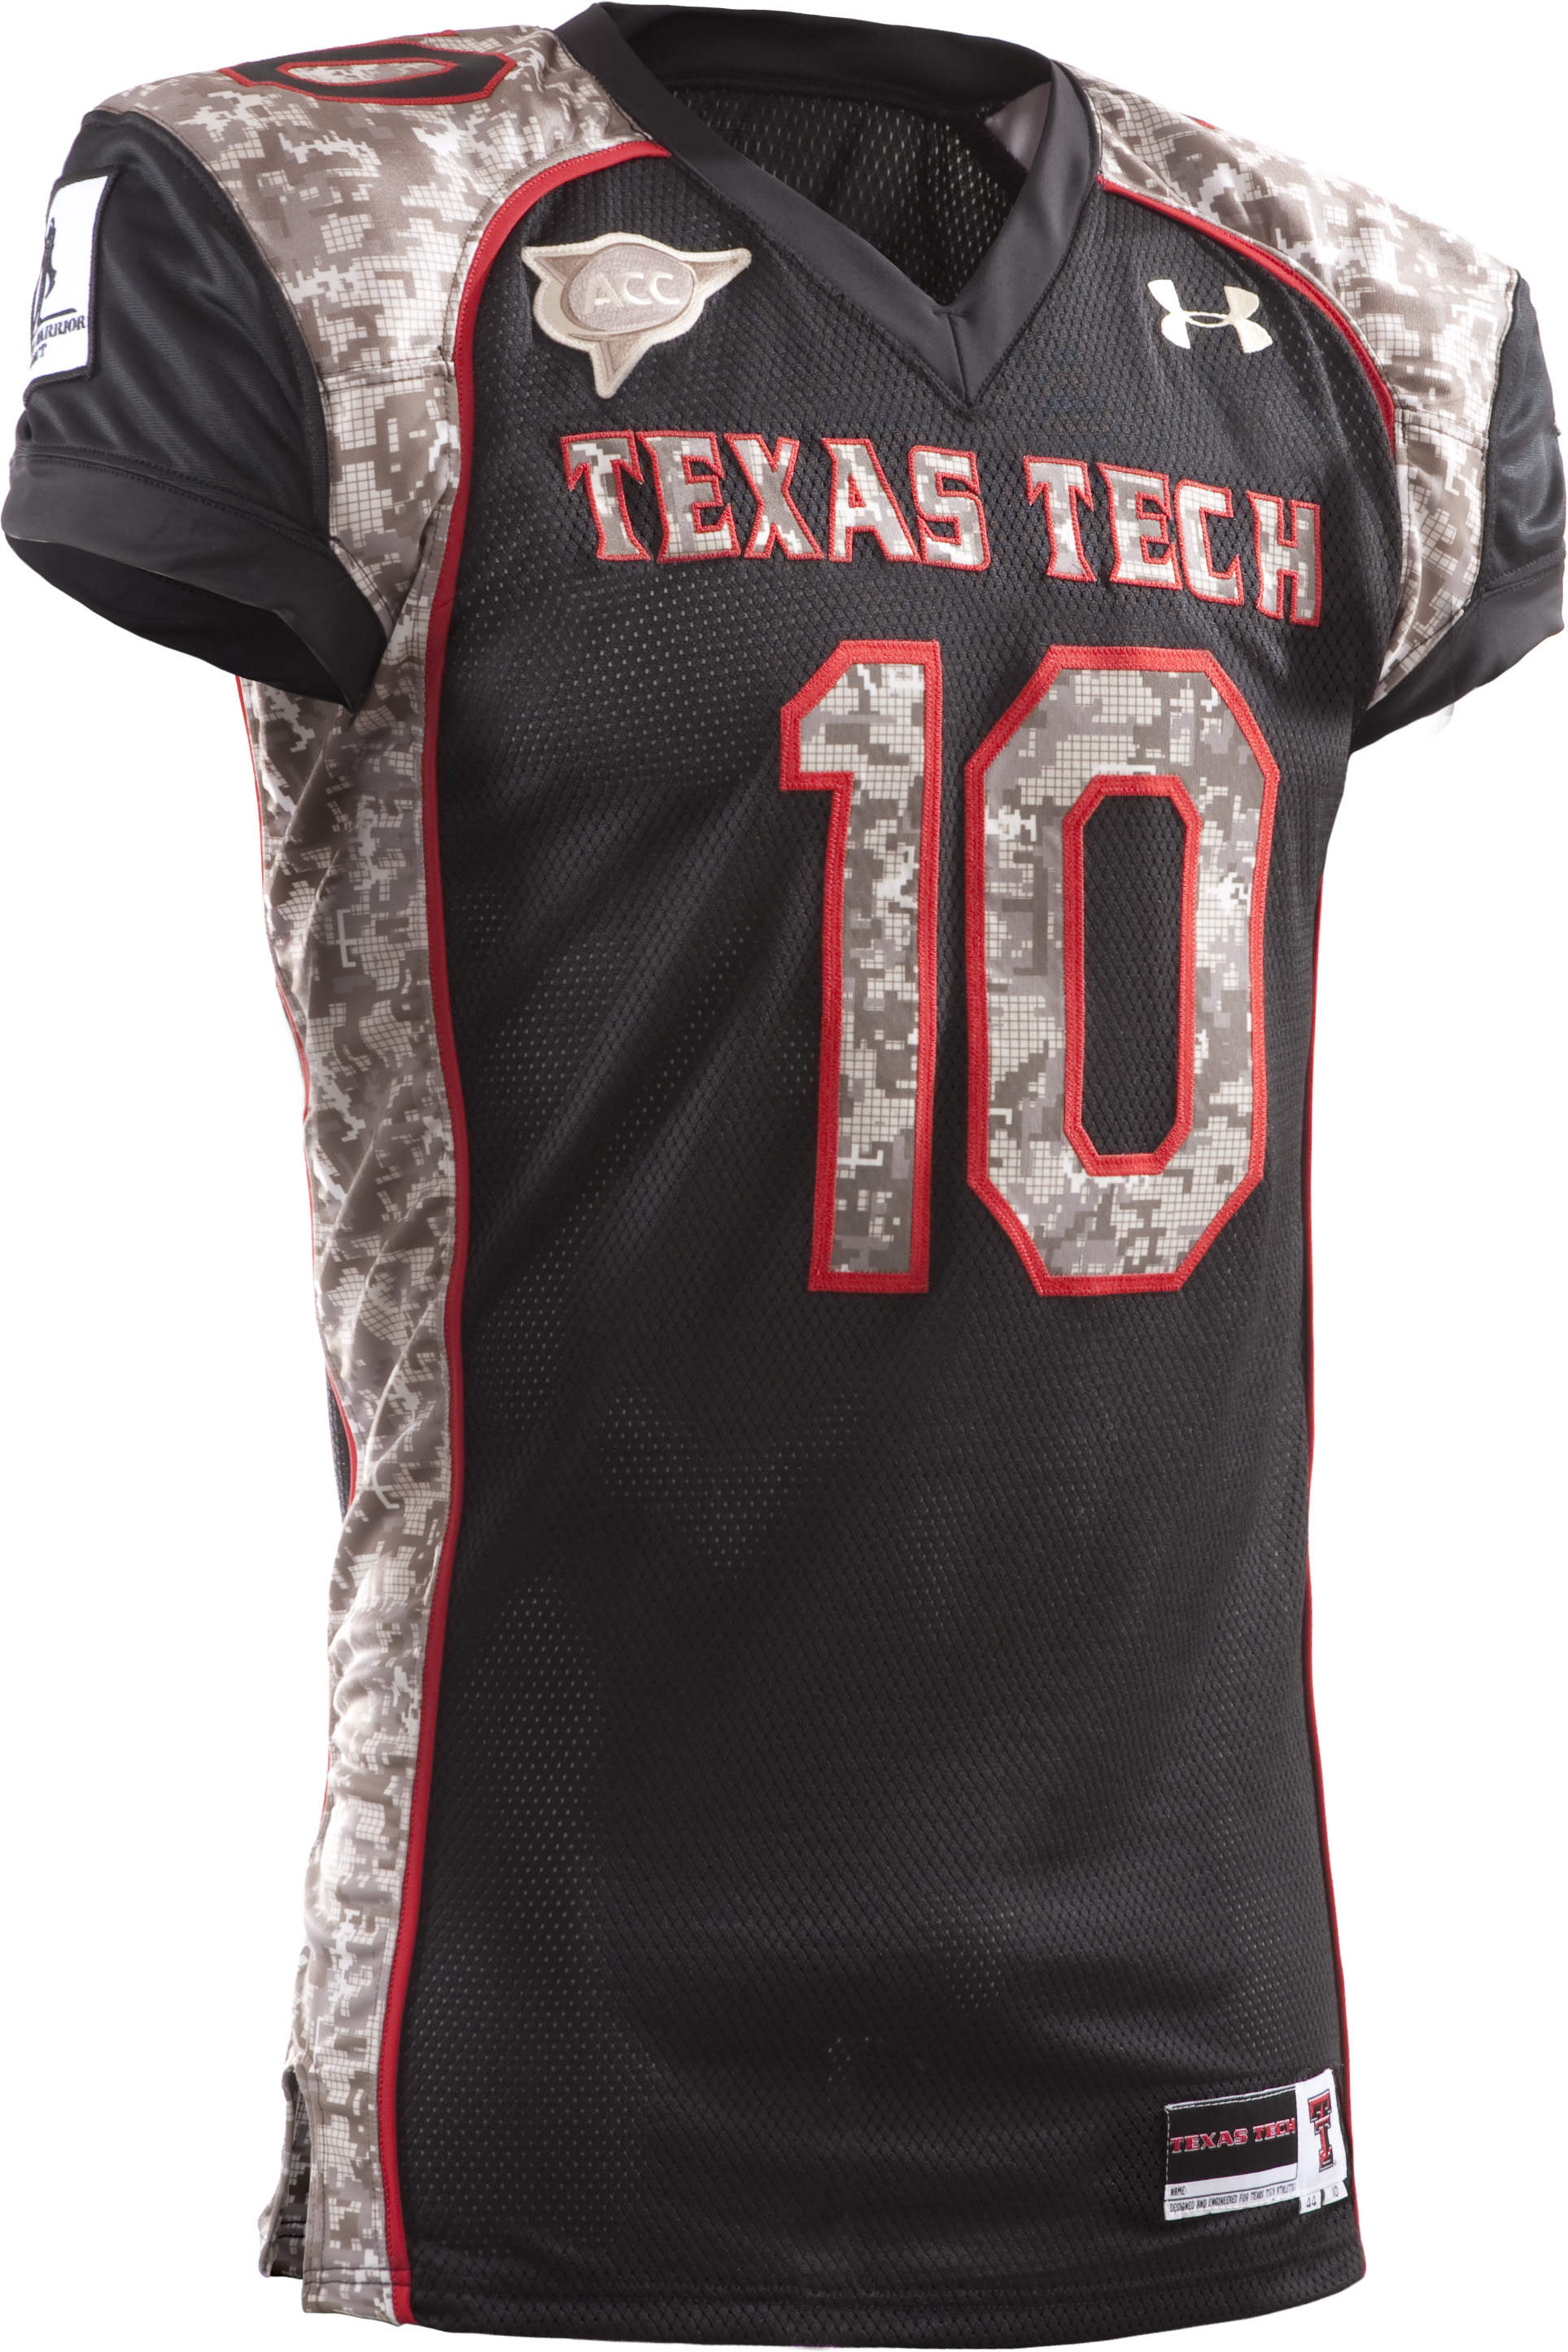 Texas Tech Football Uniforms